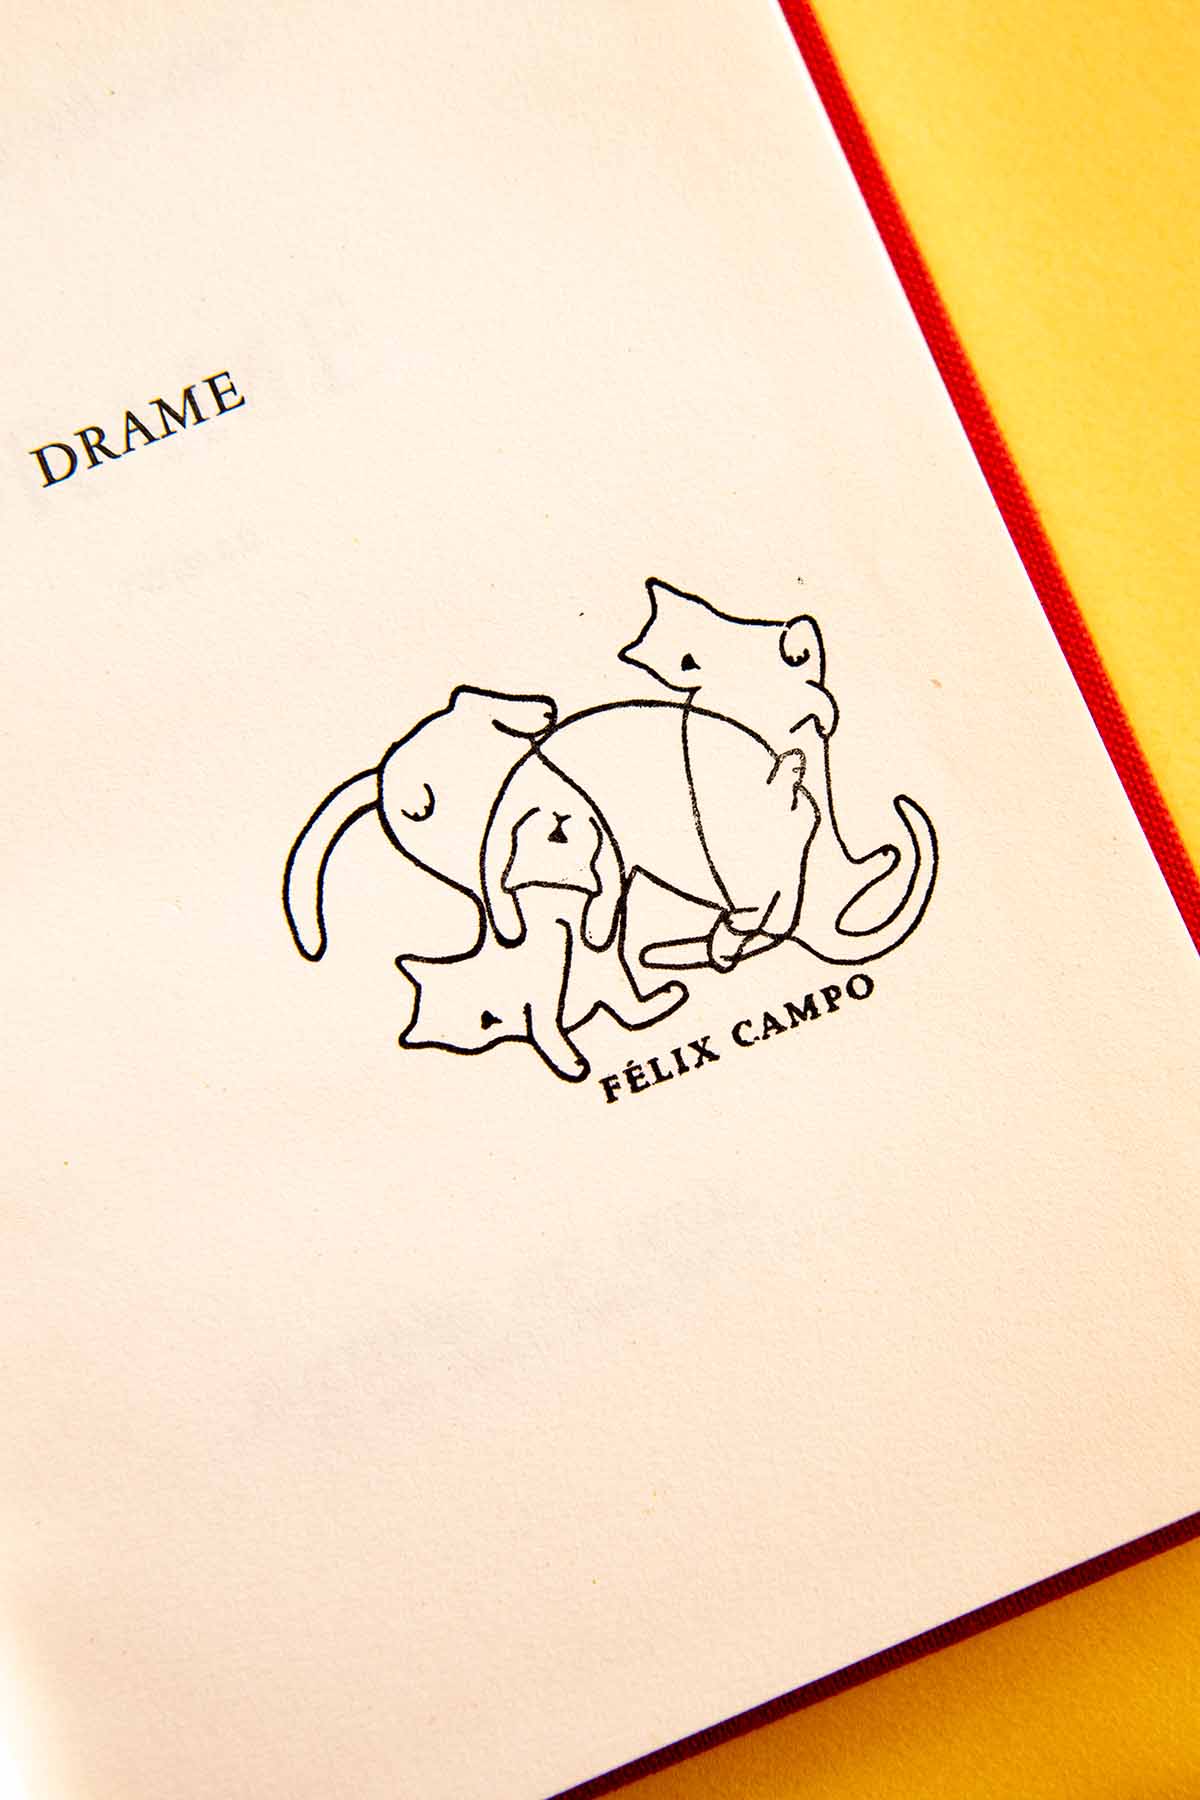 Portadilla de libro estampada con un sello exlibris de tres gatos domésticos jugando